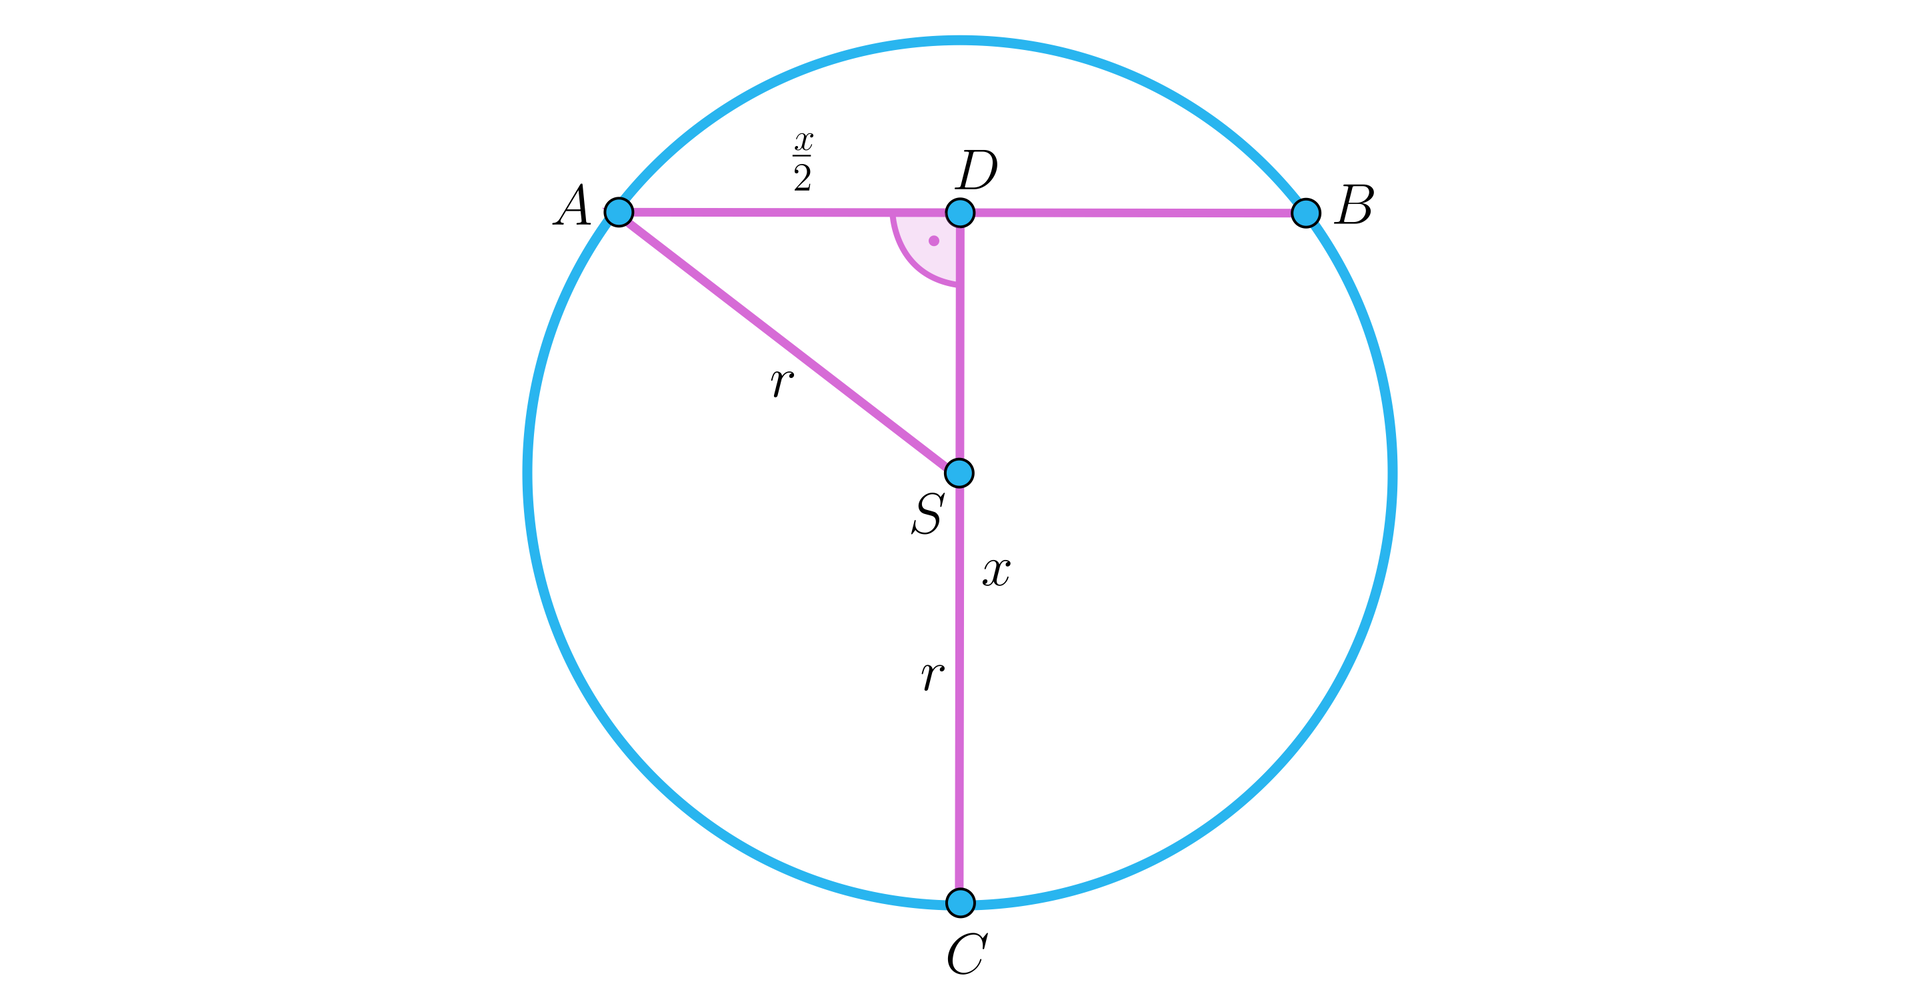 Na ilustracji przedstawiono okrąg o środku w punkcie S. Zaznaczono poziomą cięciwę AB, na której zaznaczono punkt D leżący prostopadle do środka okręgu. Zaznaczono trójkąt ADS, z kątem prostym przy wierzchołku D. Długość przyprostokątnej AD wynosi x2, natomiast przeciwprostokątna AS stanowi promień r okręgu. Zaznaczono odcinek SC, stanowiący promień okręgu, leżący na przedłużeniu przyprostokątnej DS. Odcinek DC oznaczono x. 